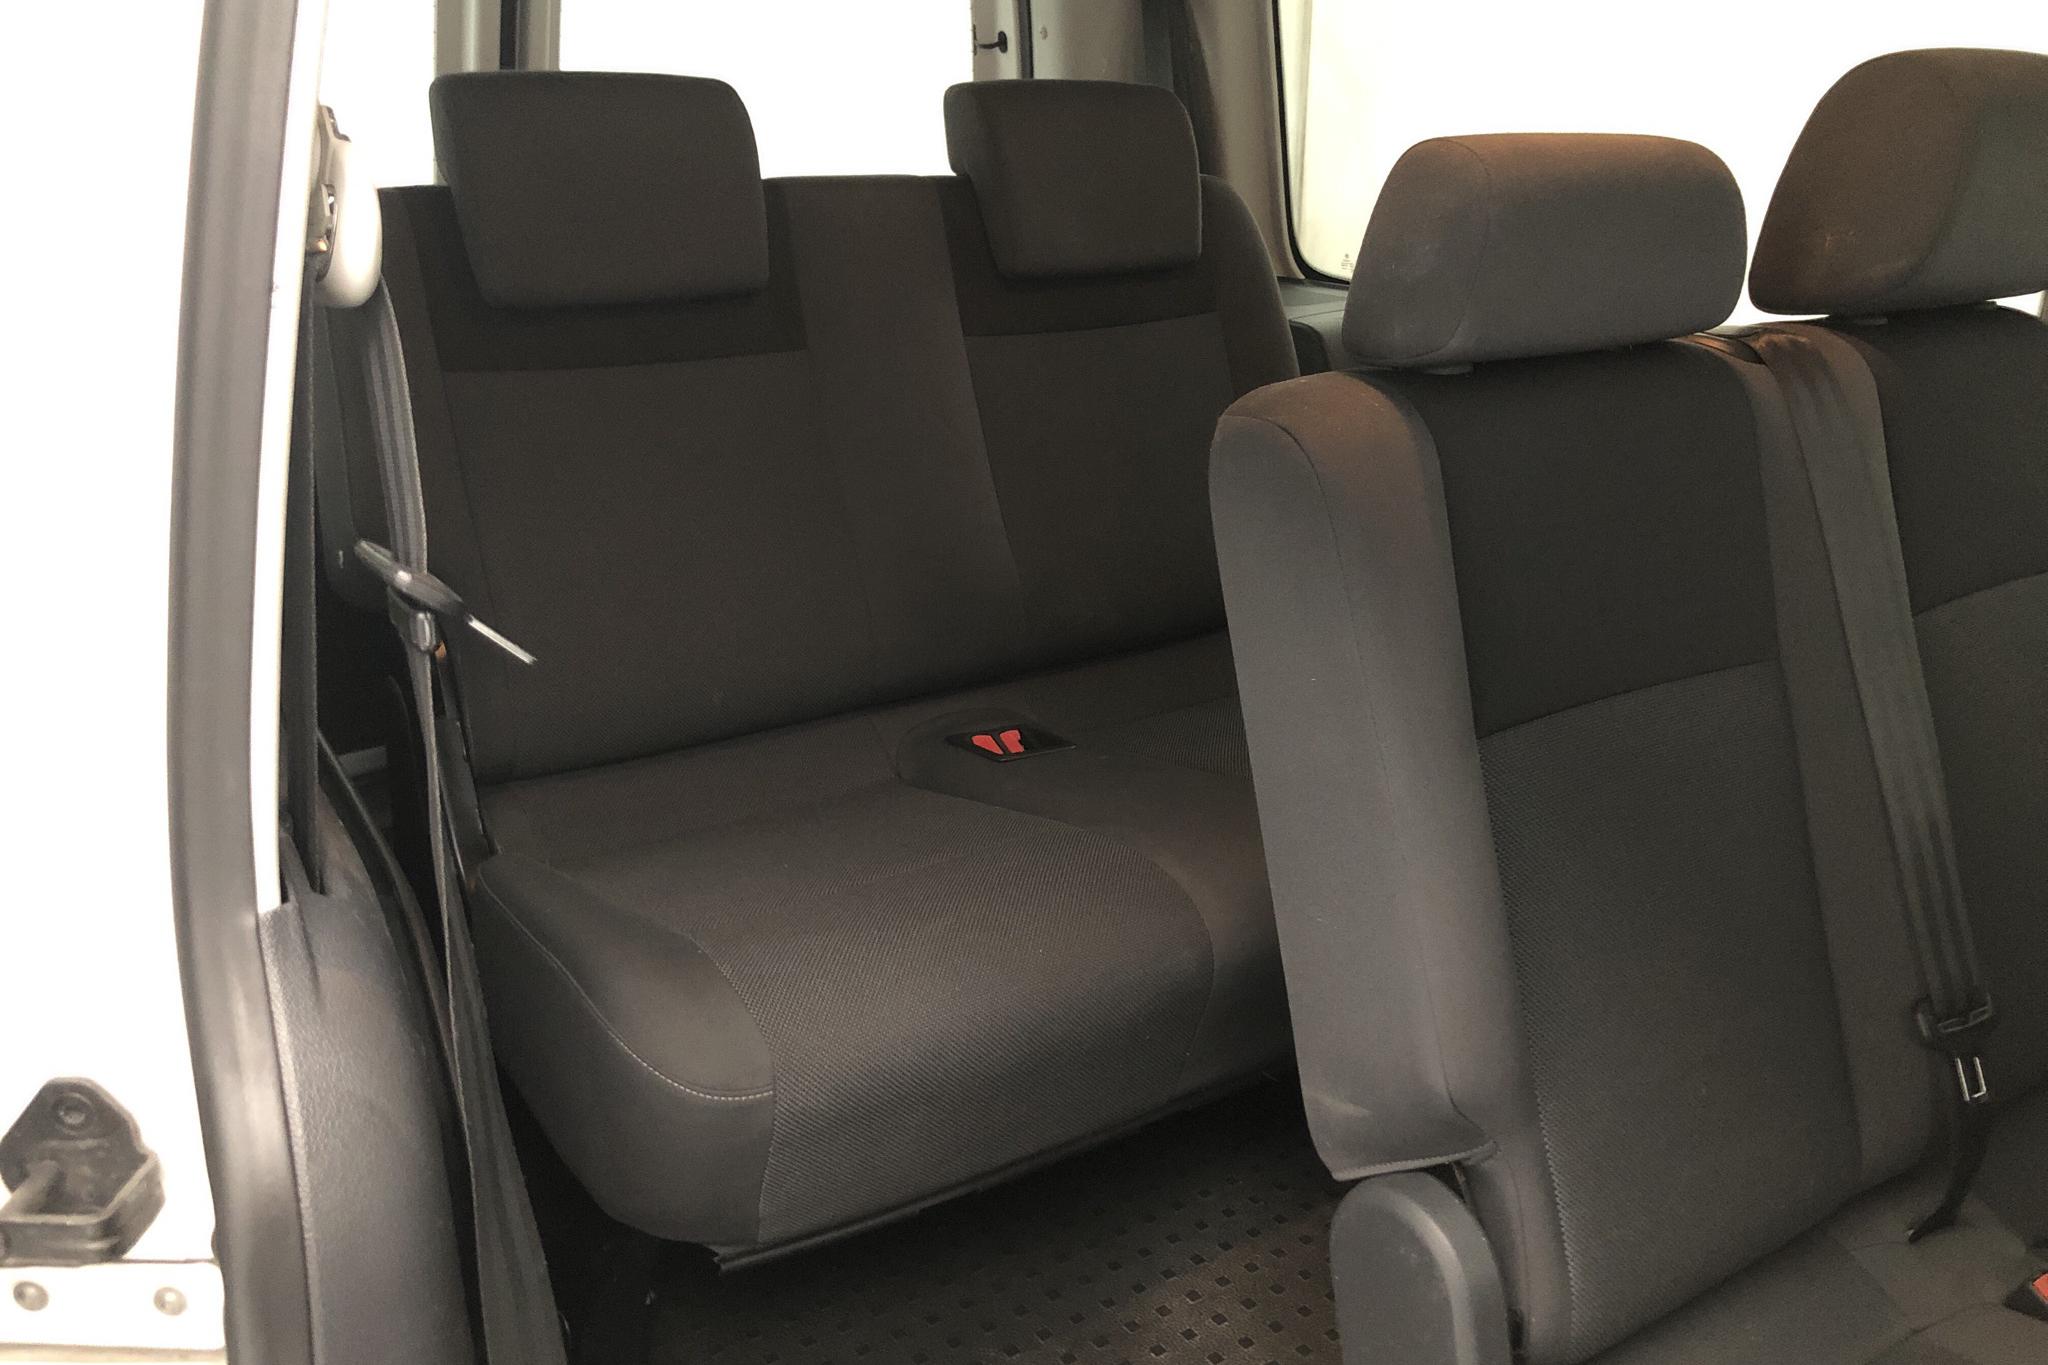 VW Caddy MPV Maxi 1.6 TDI (102hk) - 18 740 mil - Manuell - vit - 2015